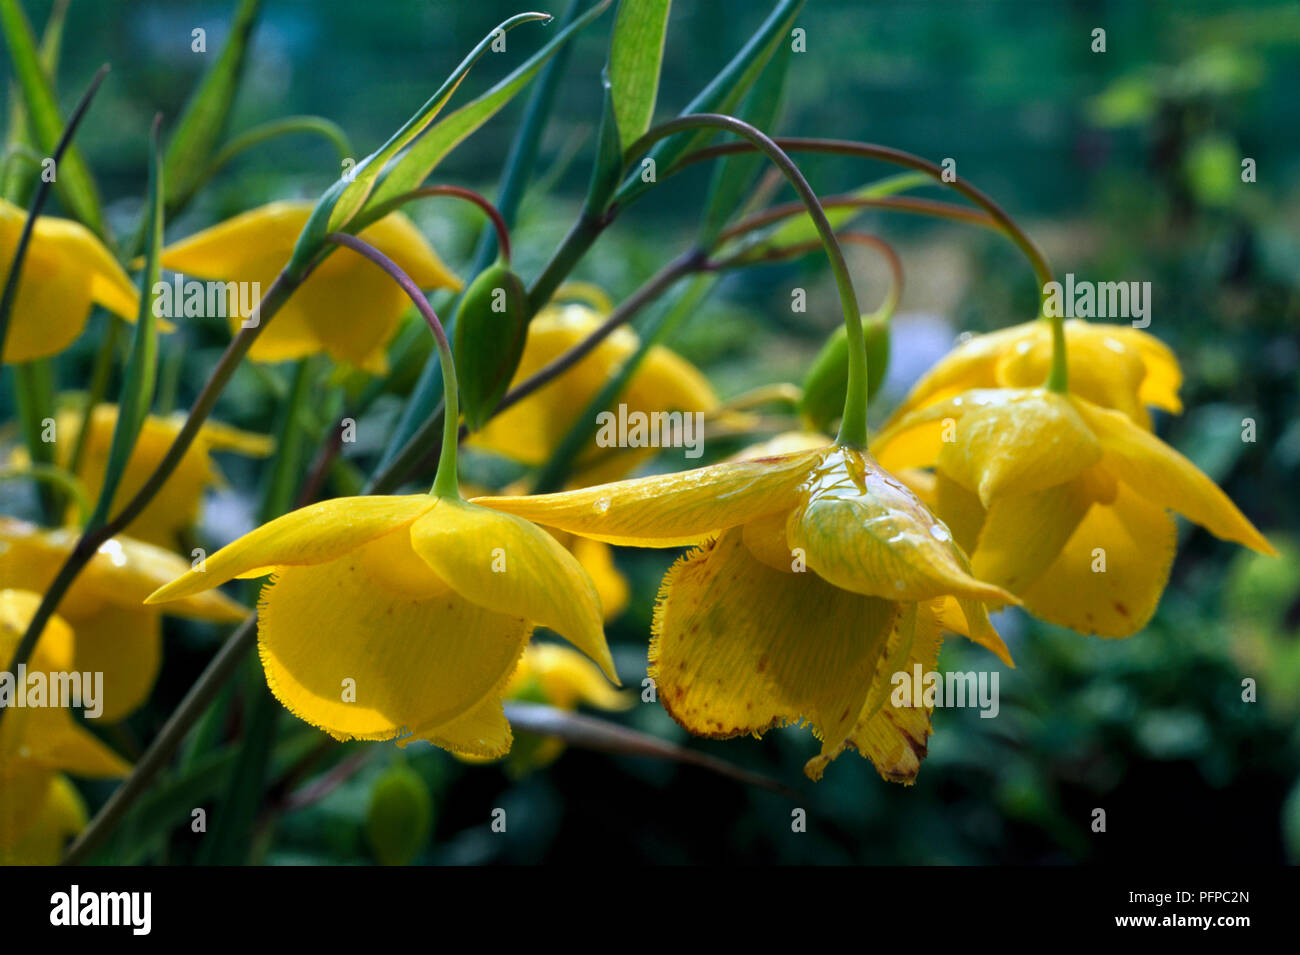 Calochortus amabilis (Diogenes' lantern), pendent yellow flowers, close-up Stock Photo